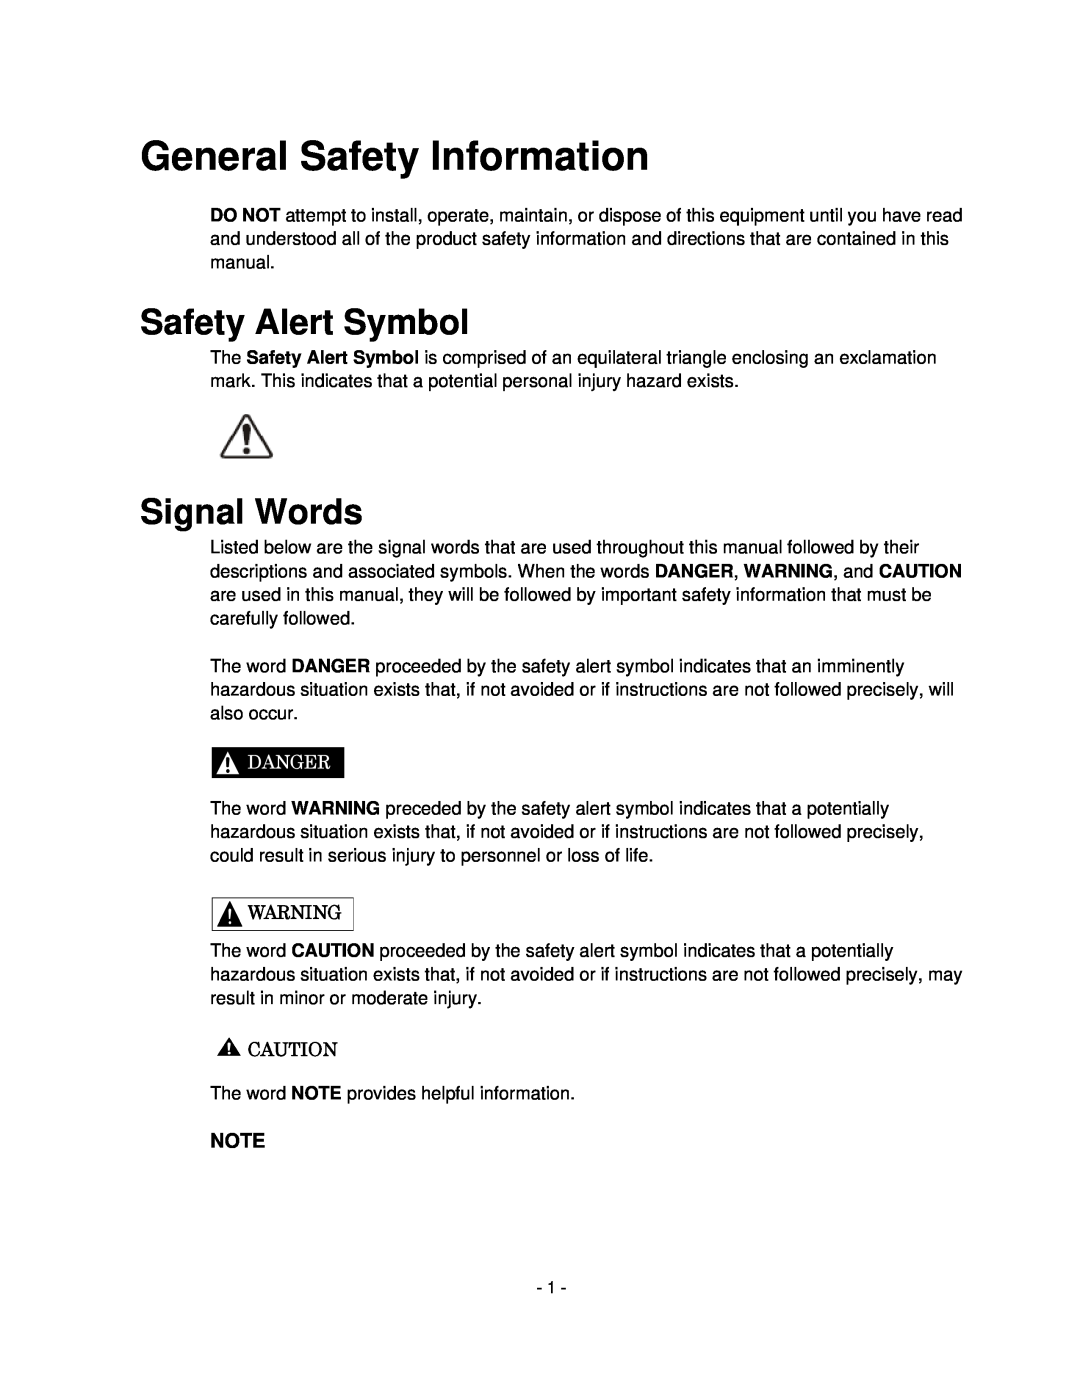 Toshiba H6A-HLS, HV6CS-MLD operation manual General Safety Information, Safety Alert Symbol, Signal Words, Danger 